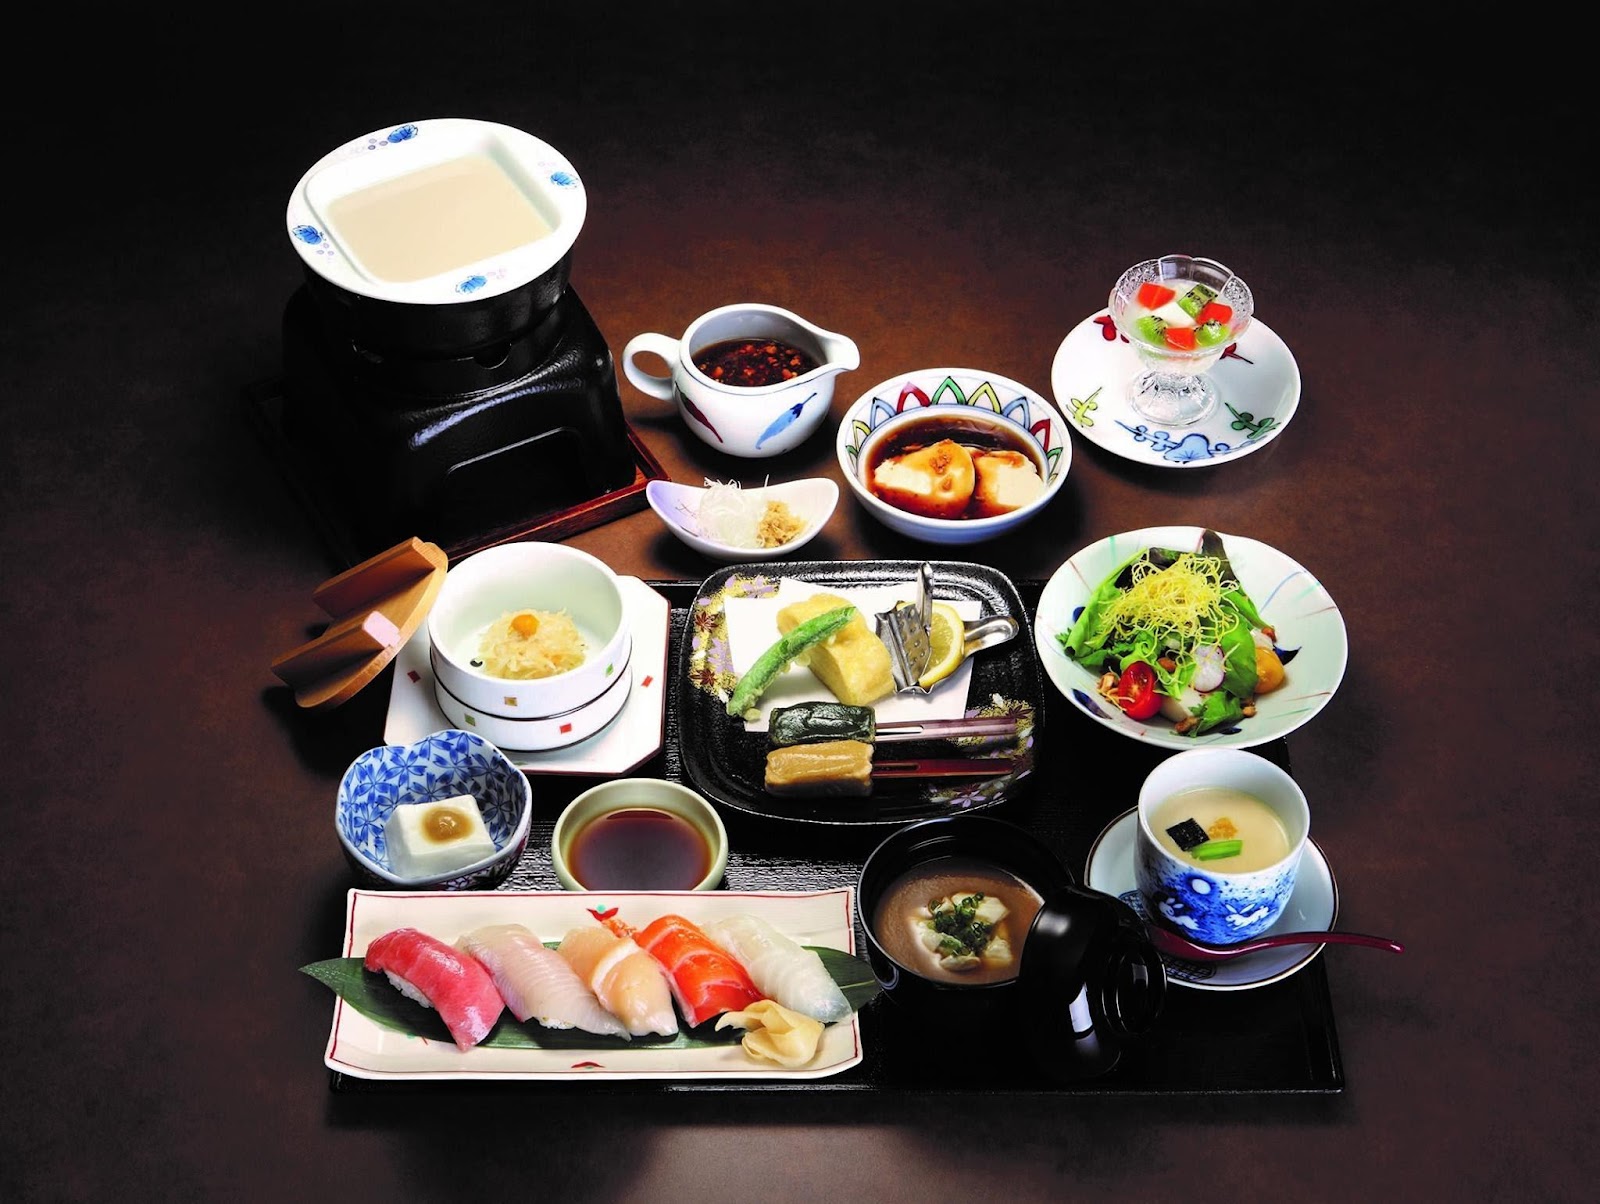 12 ร้านอาหารญี่ปุ่น ย่านทองหล่อ เอกมัย บรรยากาศดี มีห้องส่วนตัว -Umenohana TH